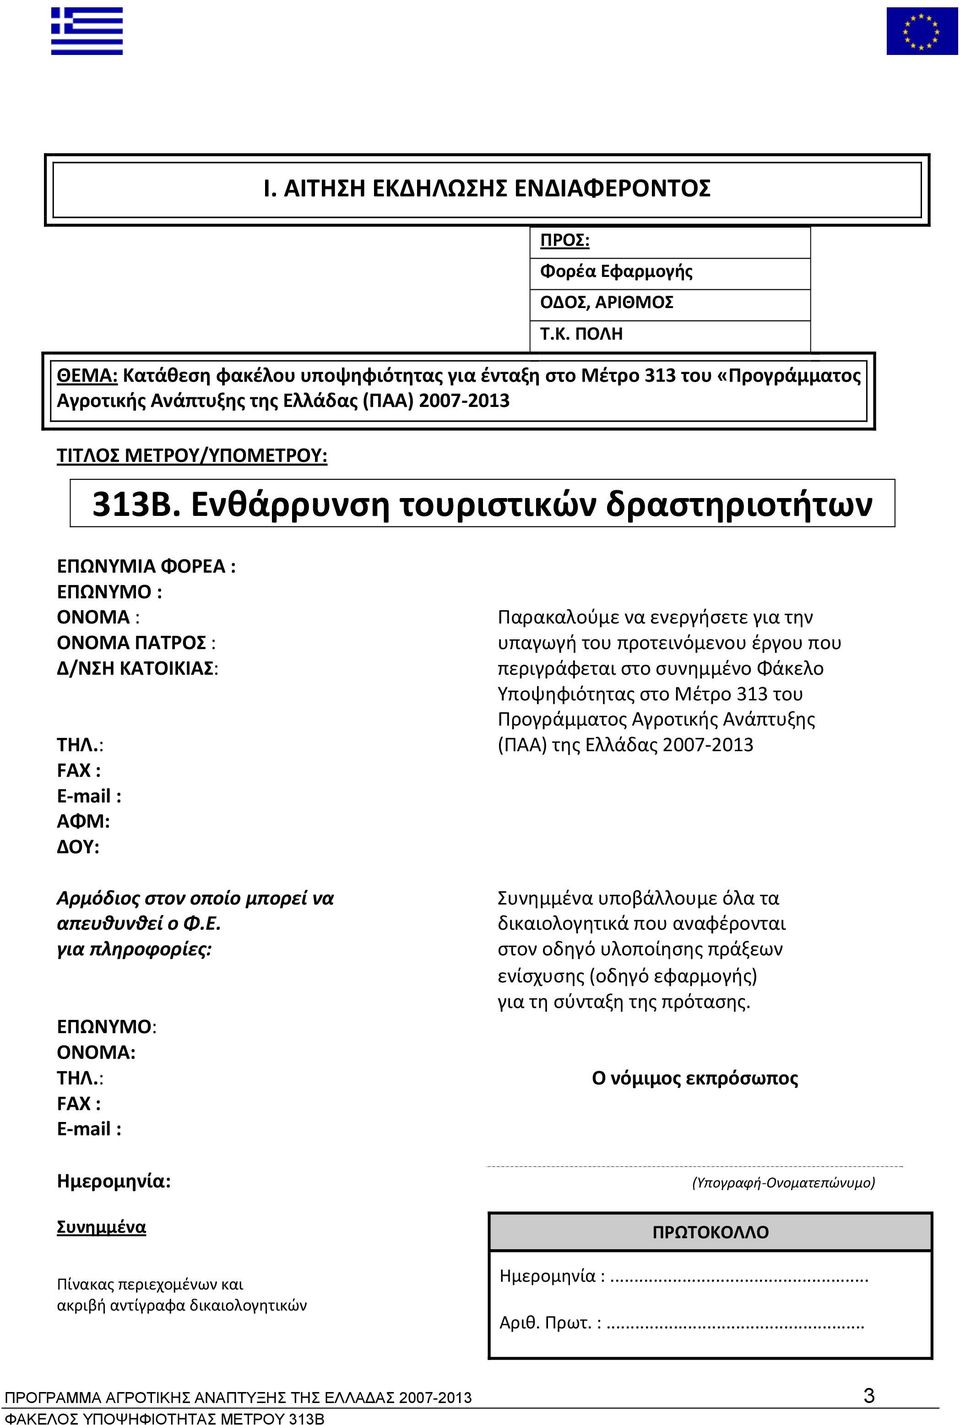 συνημμένο Φάκελο Υποψηφιότητας στο Μέτρο 313 του Προγράμματος Αγροτικής Ανάπτυξης ΤΗΛ.: (ΠΑΑ) της Ελλάδας 2007 2013 FAX : Ε mail : ΑΦΜ: ΔΟΥ: Αρμόδιος στον οποίο μπορεί να απευθυνθεί ο Φ.Ε. για πληροφορίες: ΕΠΩΝΥΜΟ: ΟΝΟΜΑ: ΤΗΛ.